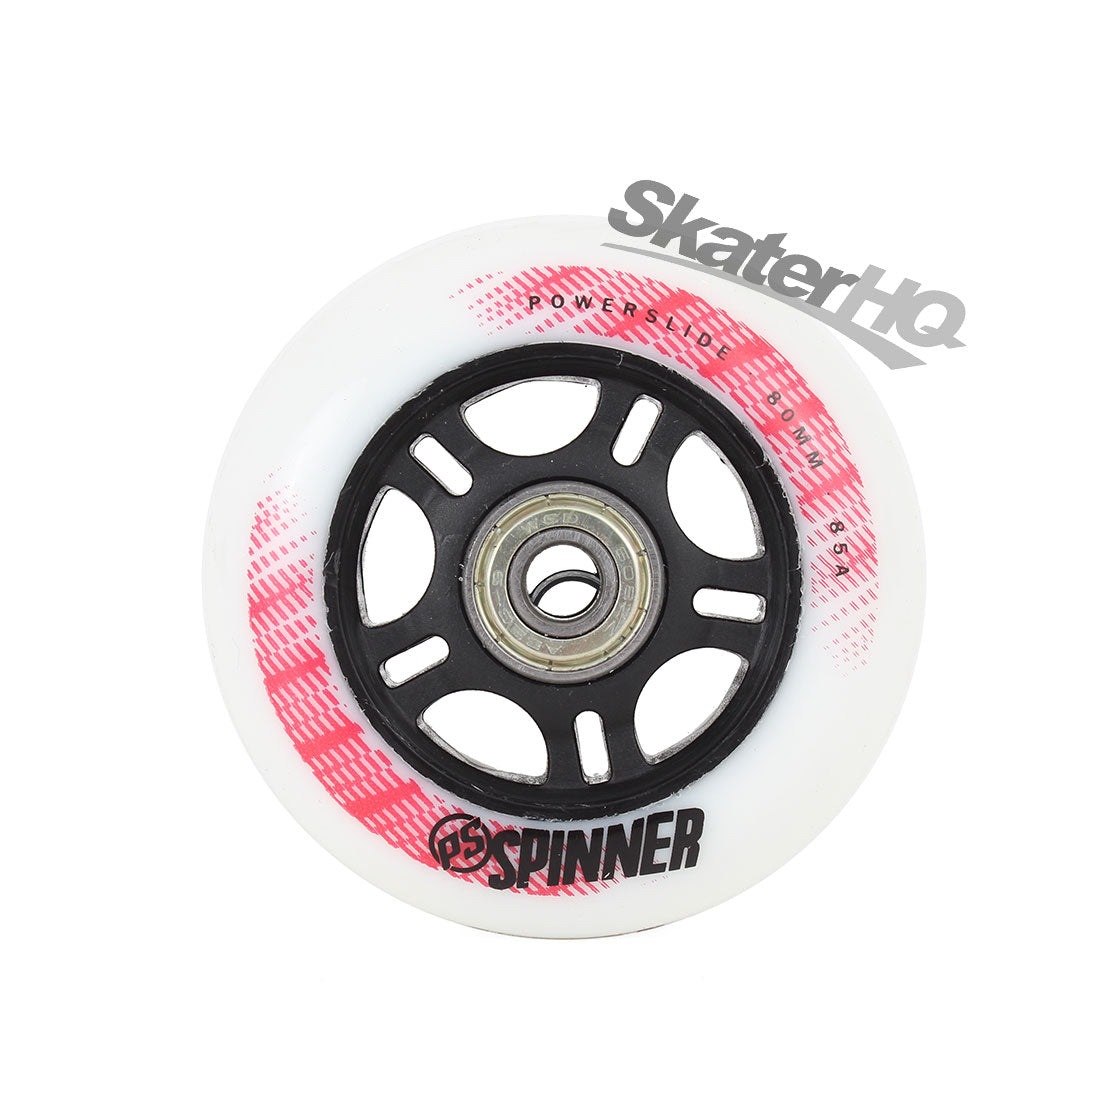 Powerslide Spinner 80mm 85a - Single Inline Rec Wheels